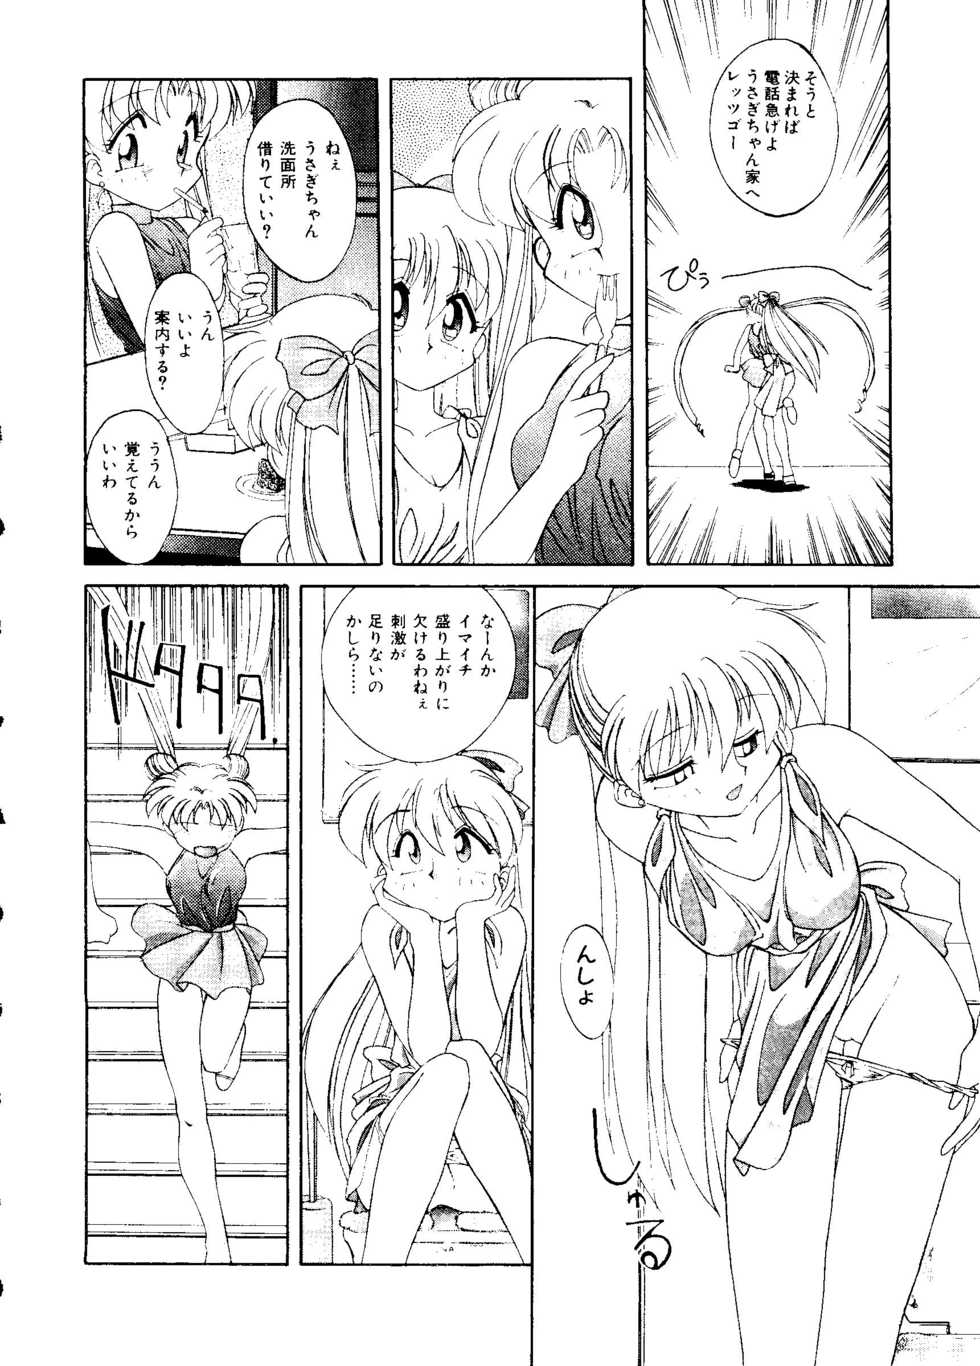 [Anthology] Planet Power 2 (Bishoujo Senshi Sailor Moon) - Page 25